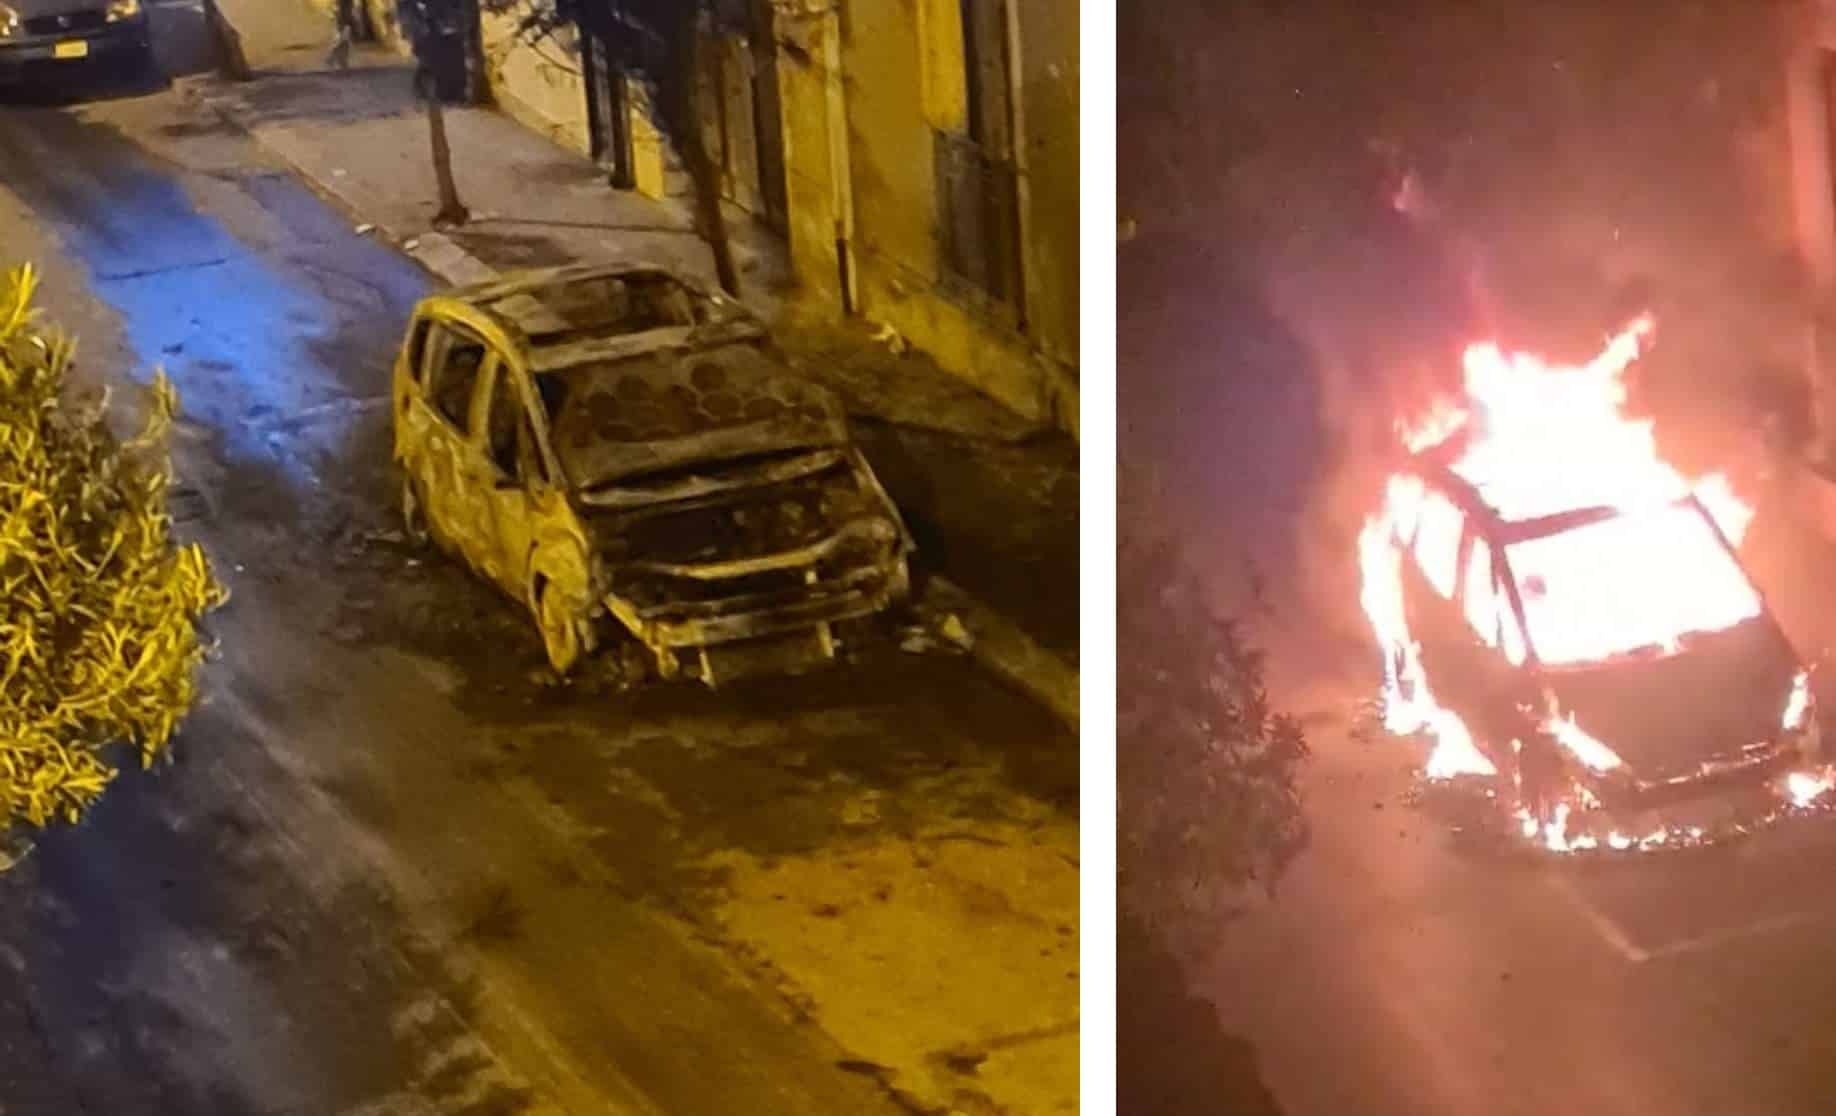 Nottata di fuoco in via Garibaldi, auto divorata dalle fiamme: paura per i residenti